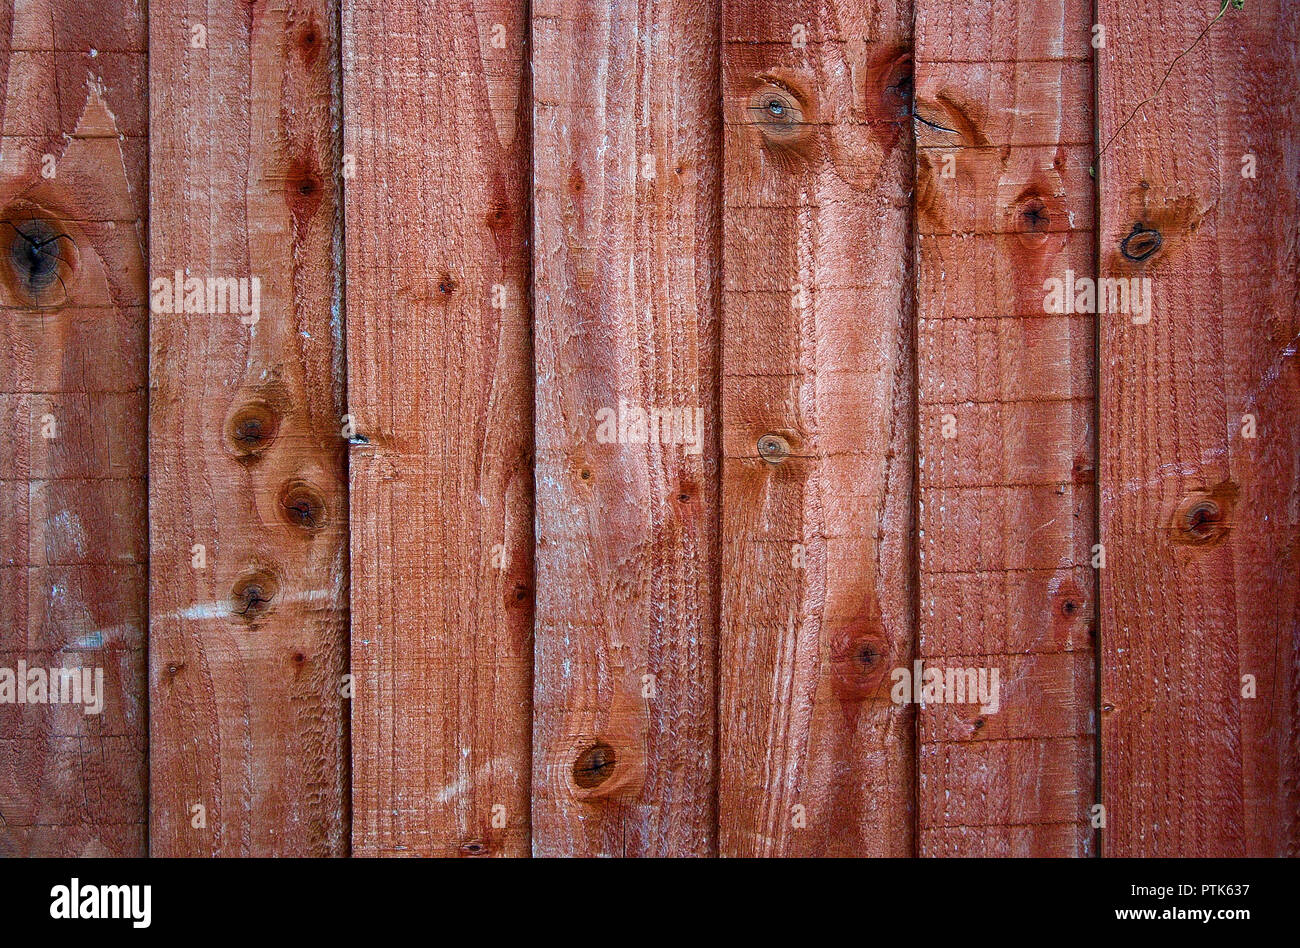 Wood paneling Stock Photo